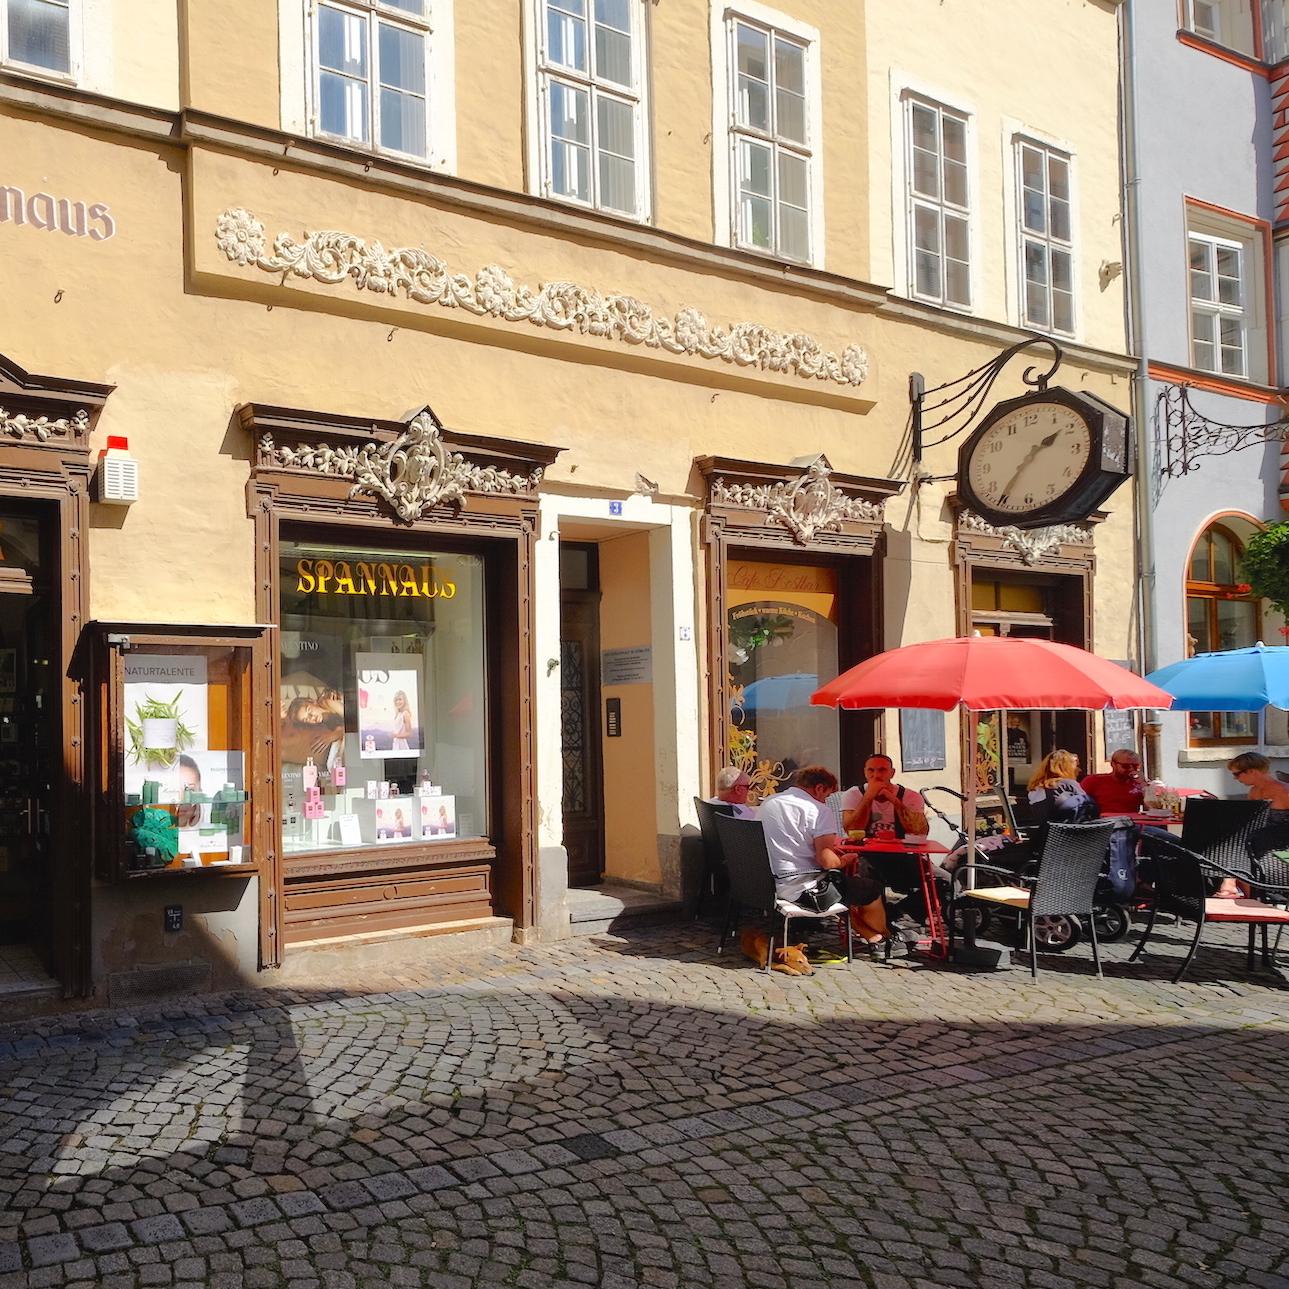 Restaurant "Cafe Kostbar" in Naumburg (Saale)